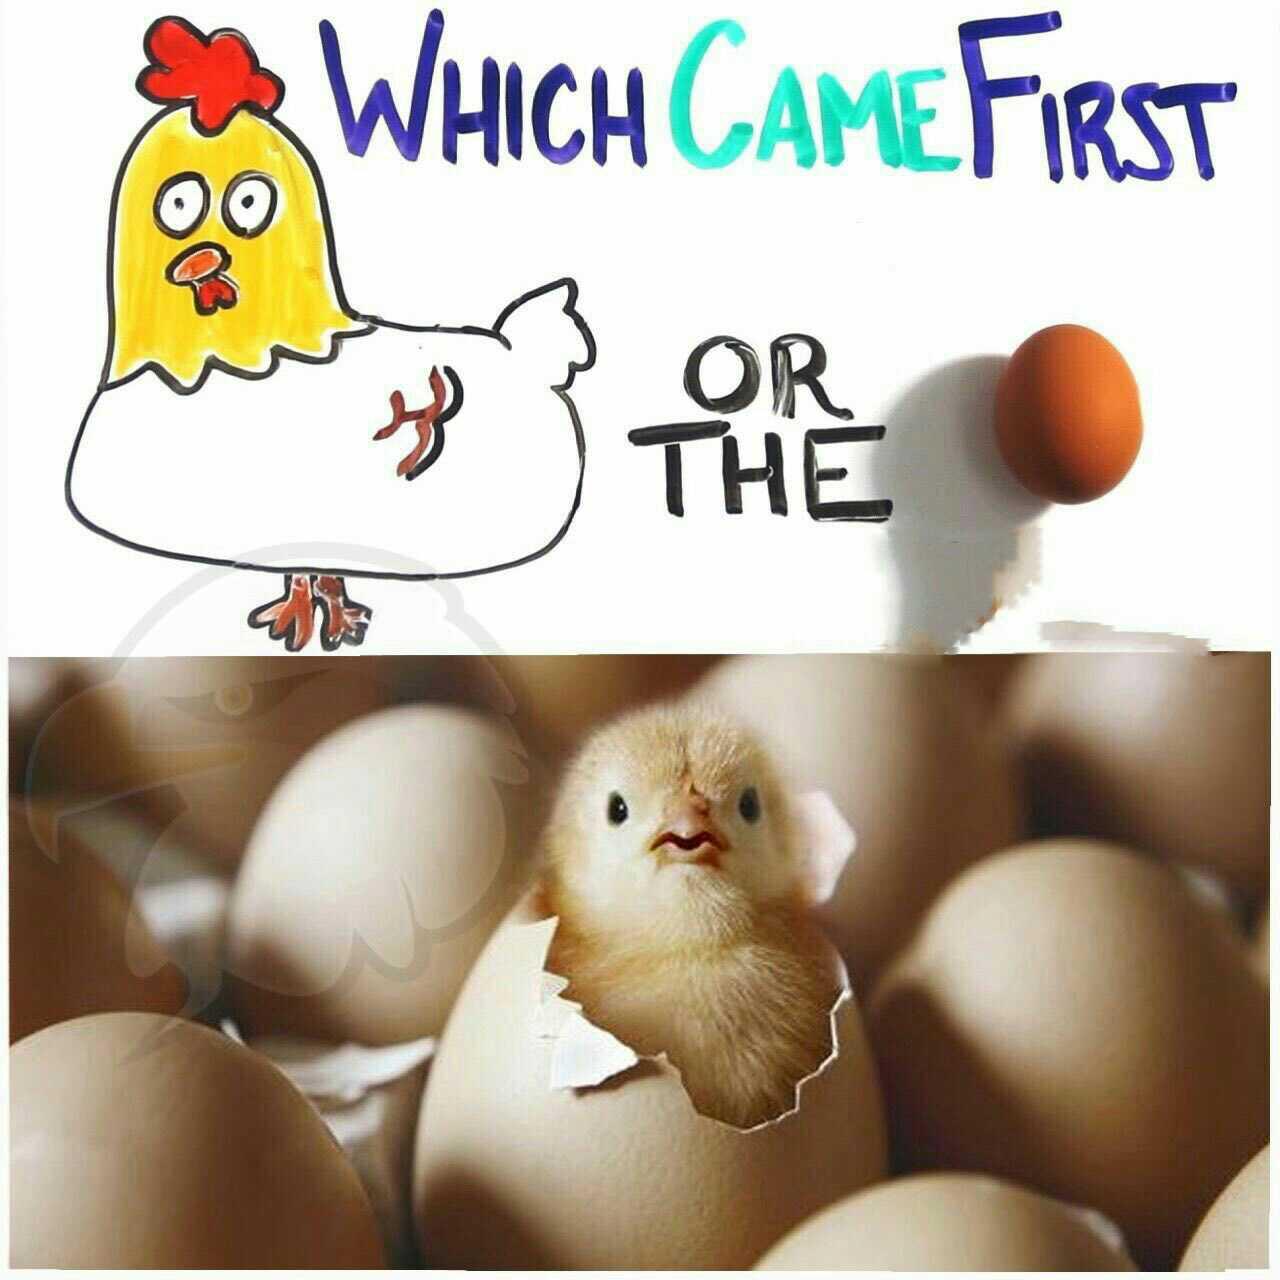 اول مرغ بود یا تخم مرغ؟